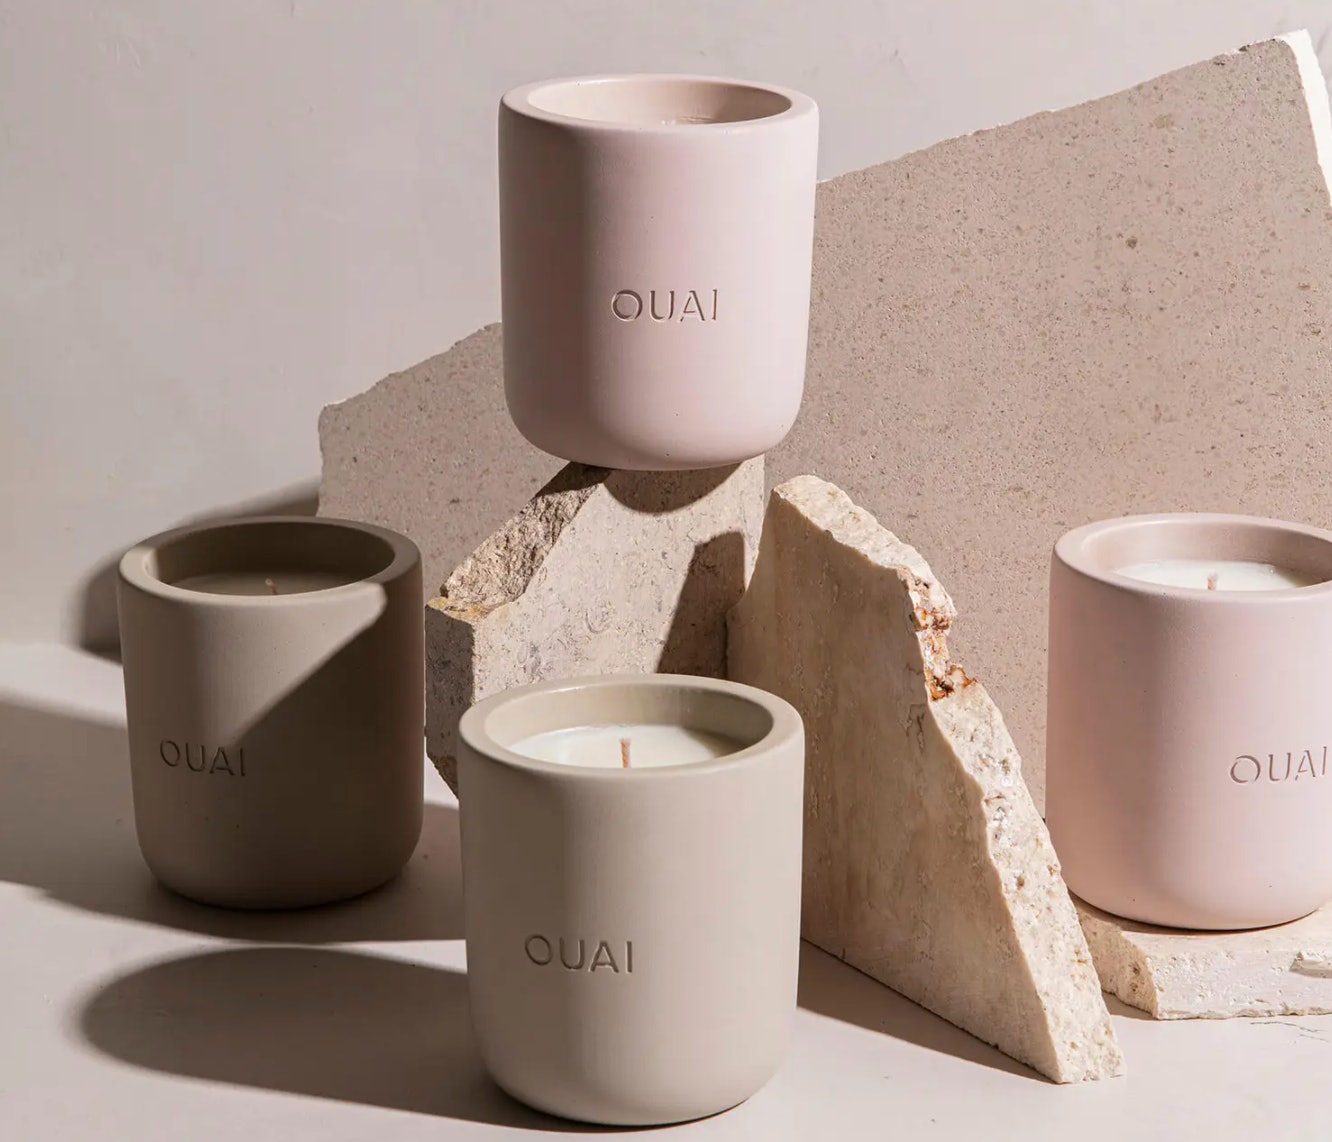 Kultna lepotna znamka OUAI je pravkar lansirala sveče v svojih značilnih dišavah